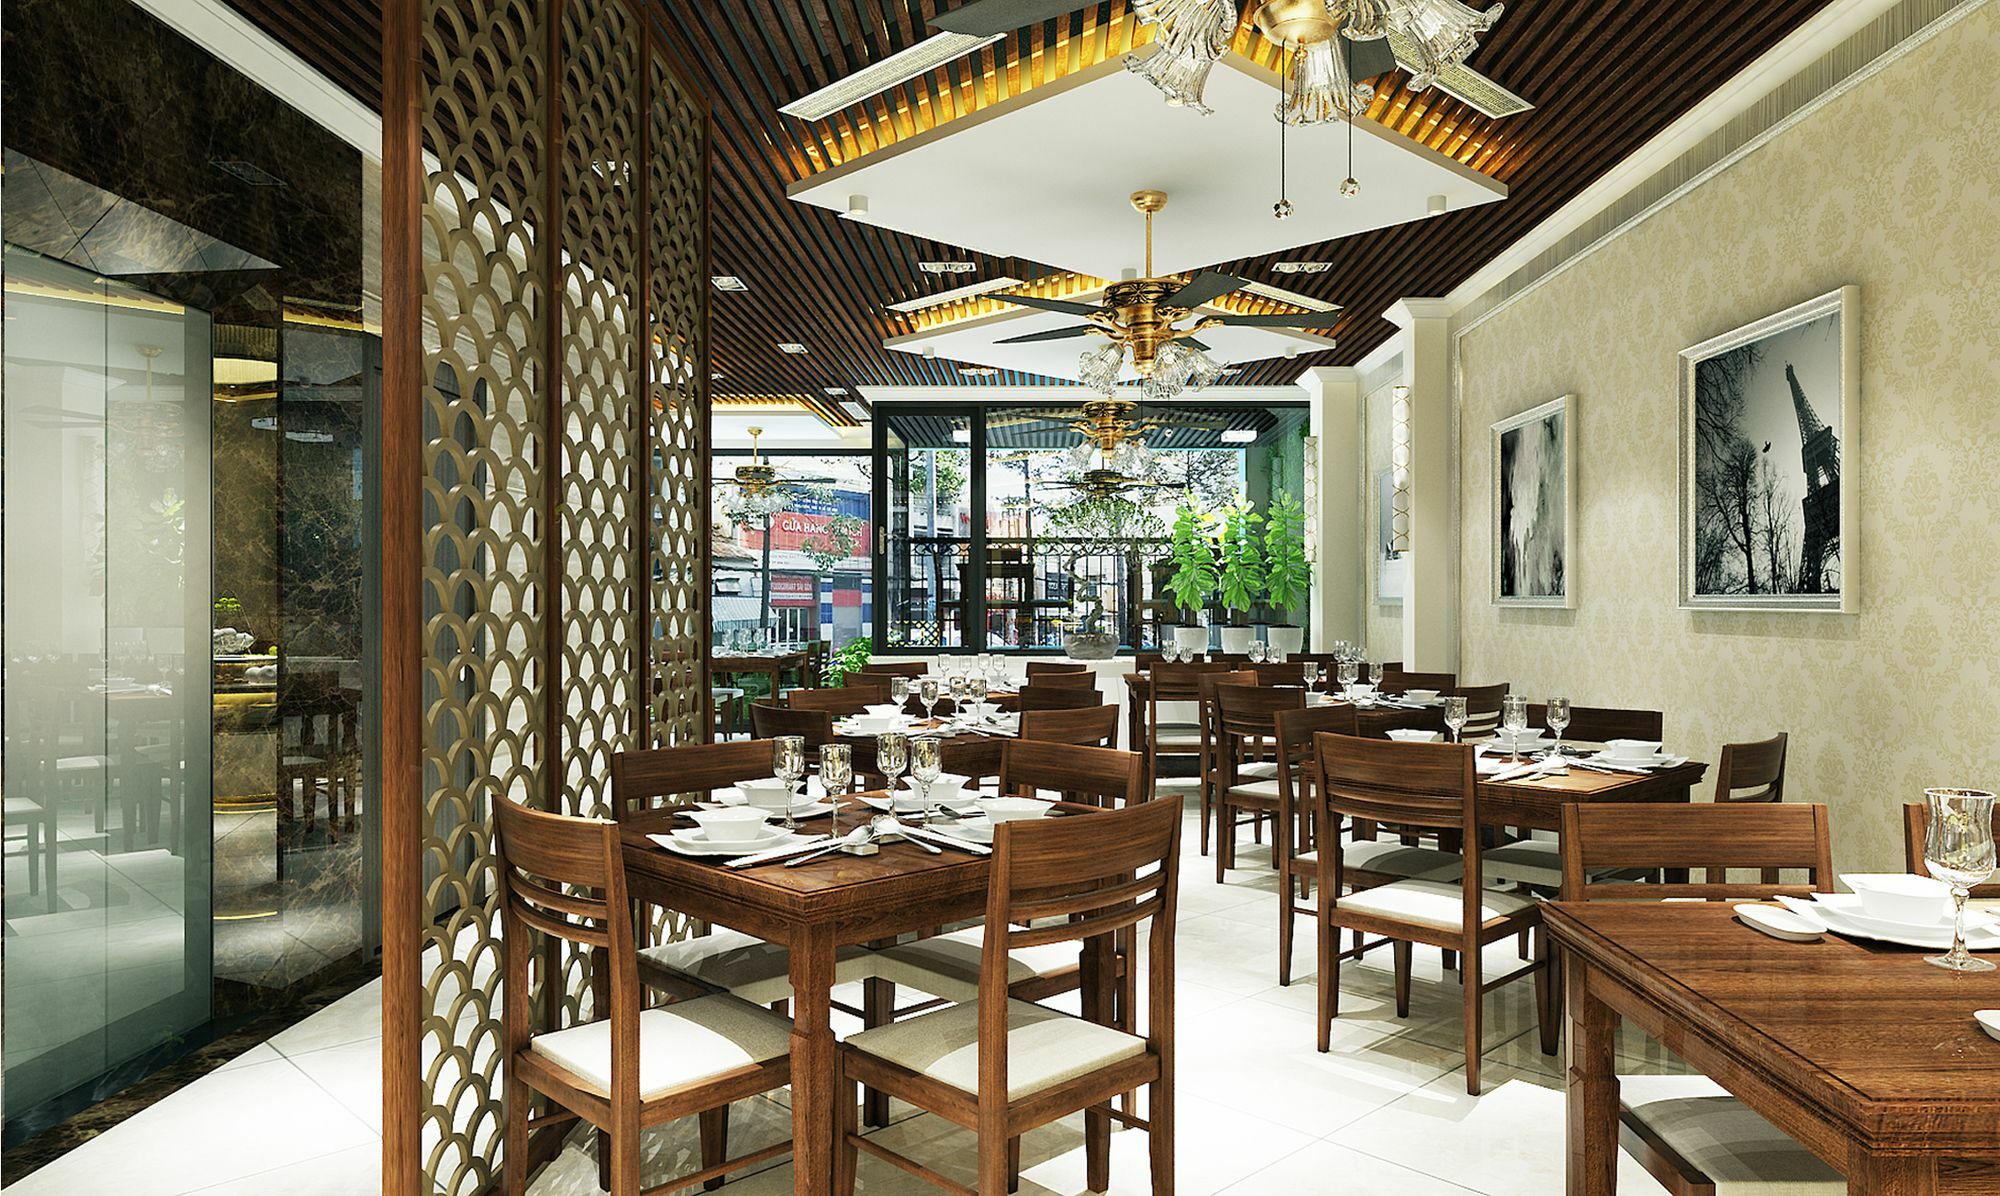 22Land Residence Hotel & Spa Ha Noi Hanoi Buitenkant foto